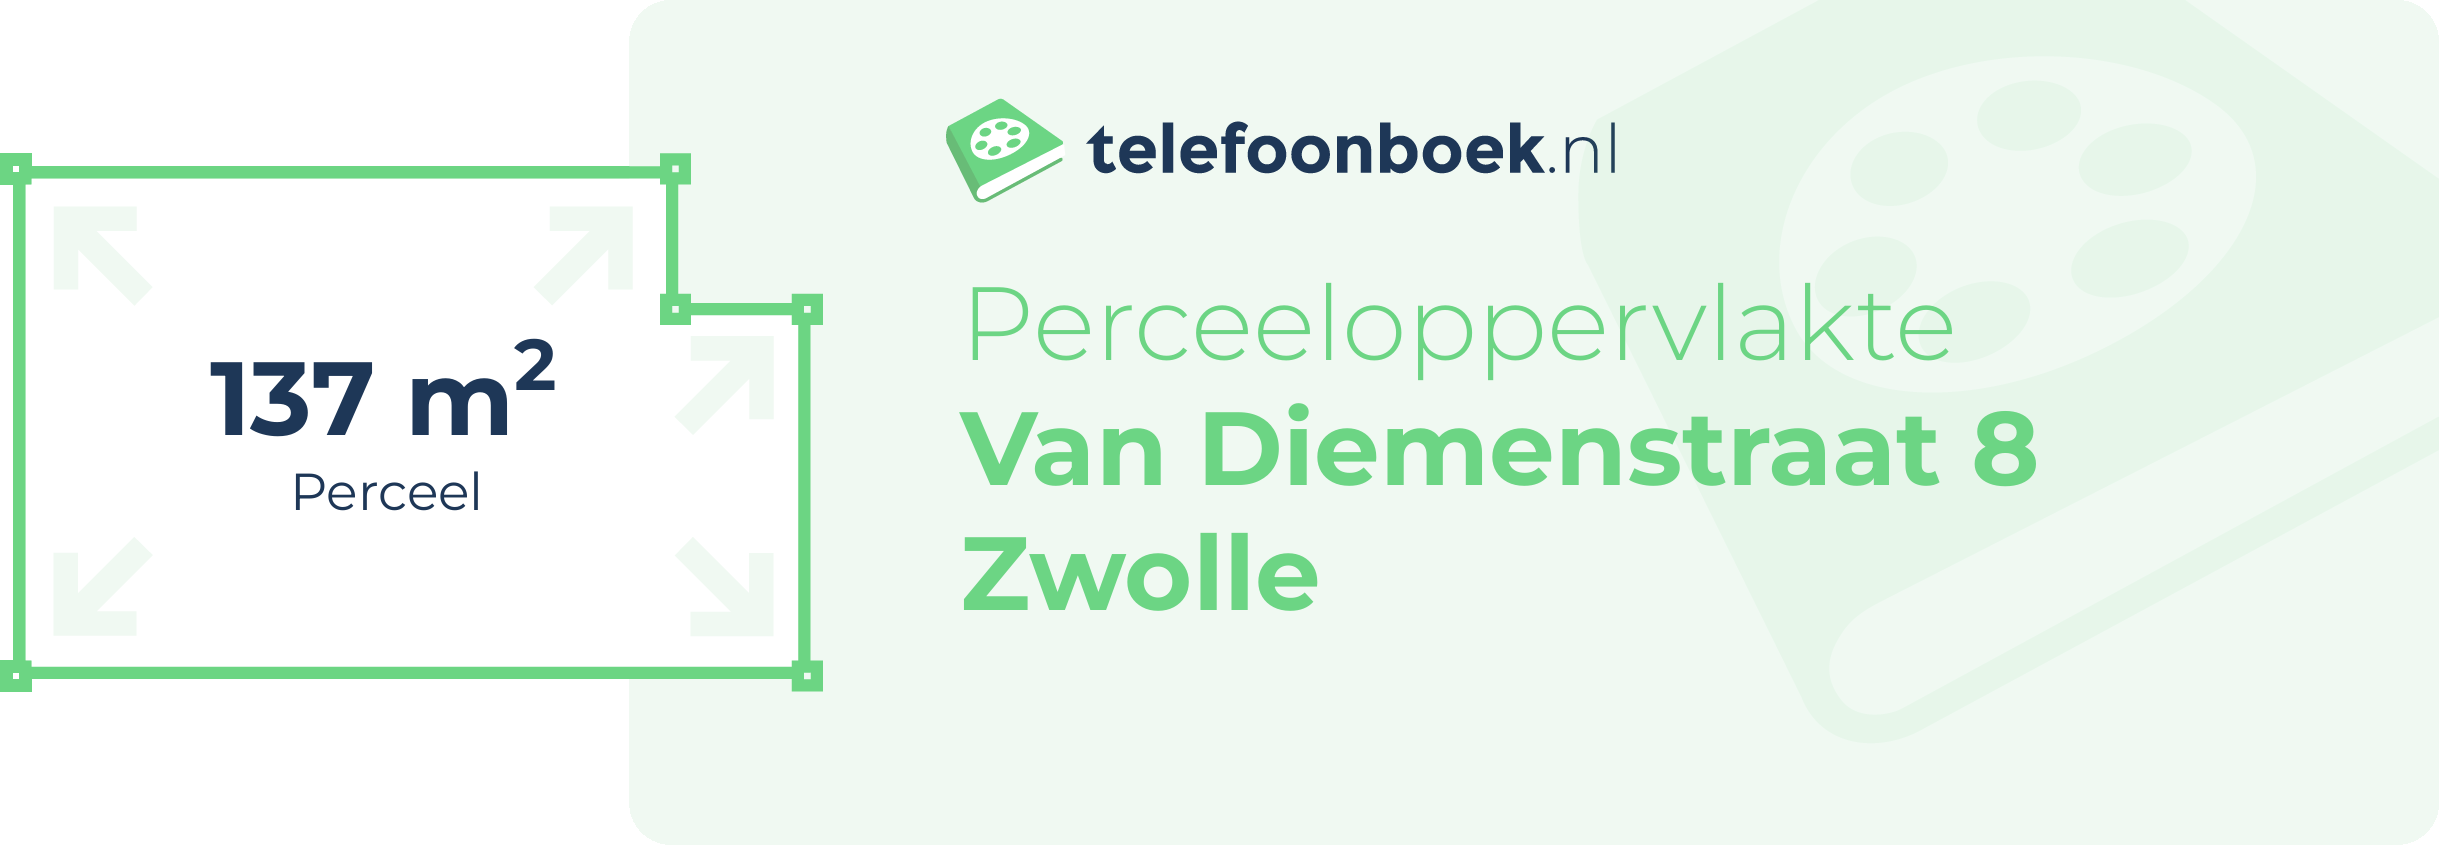 Perceeloppervlakte Van Diemenstraat 8 Zwolle